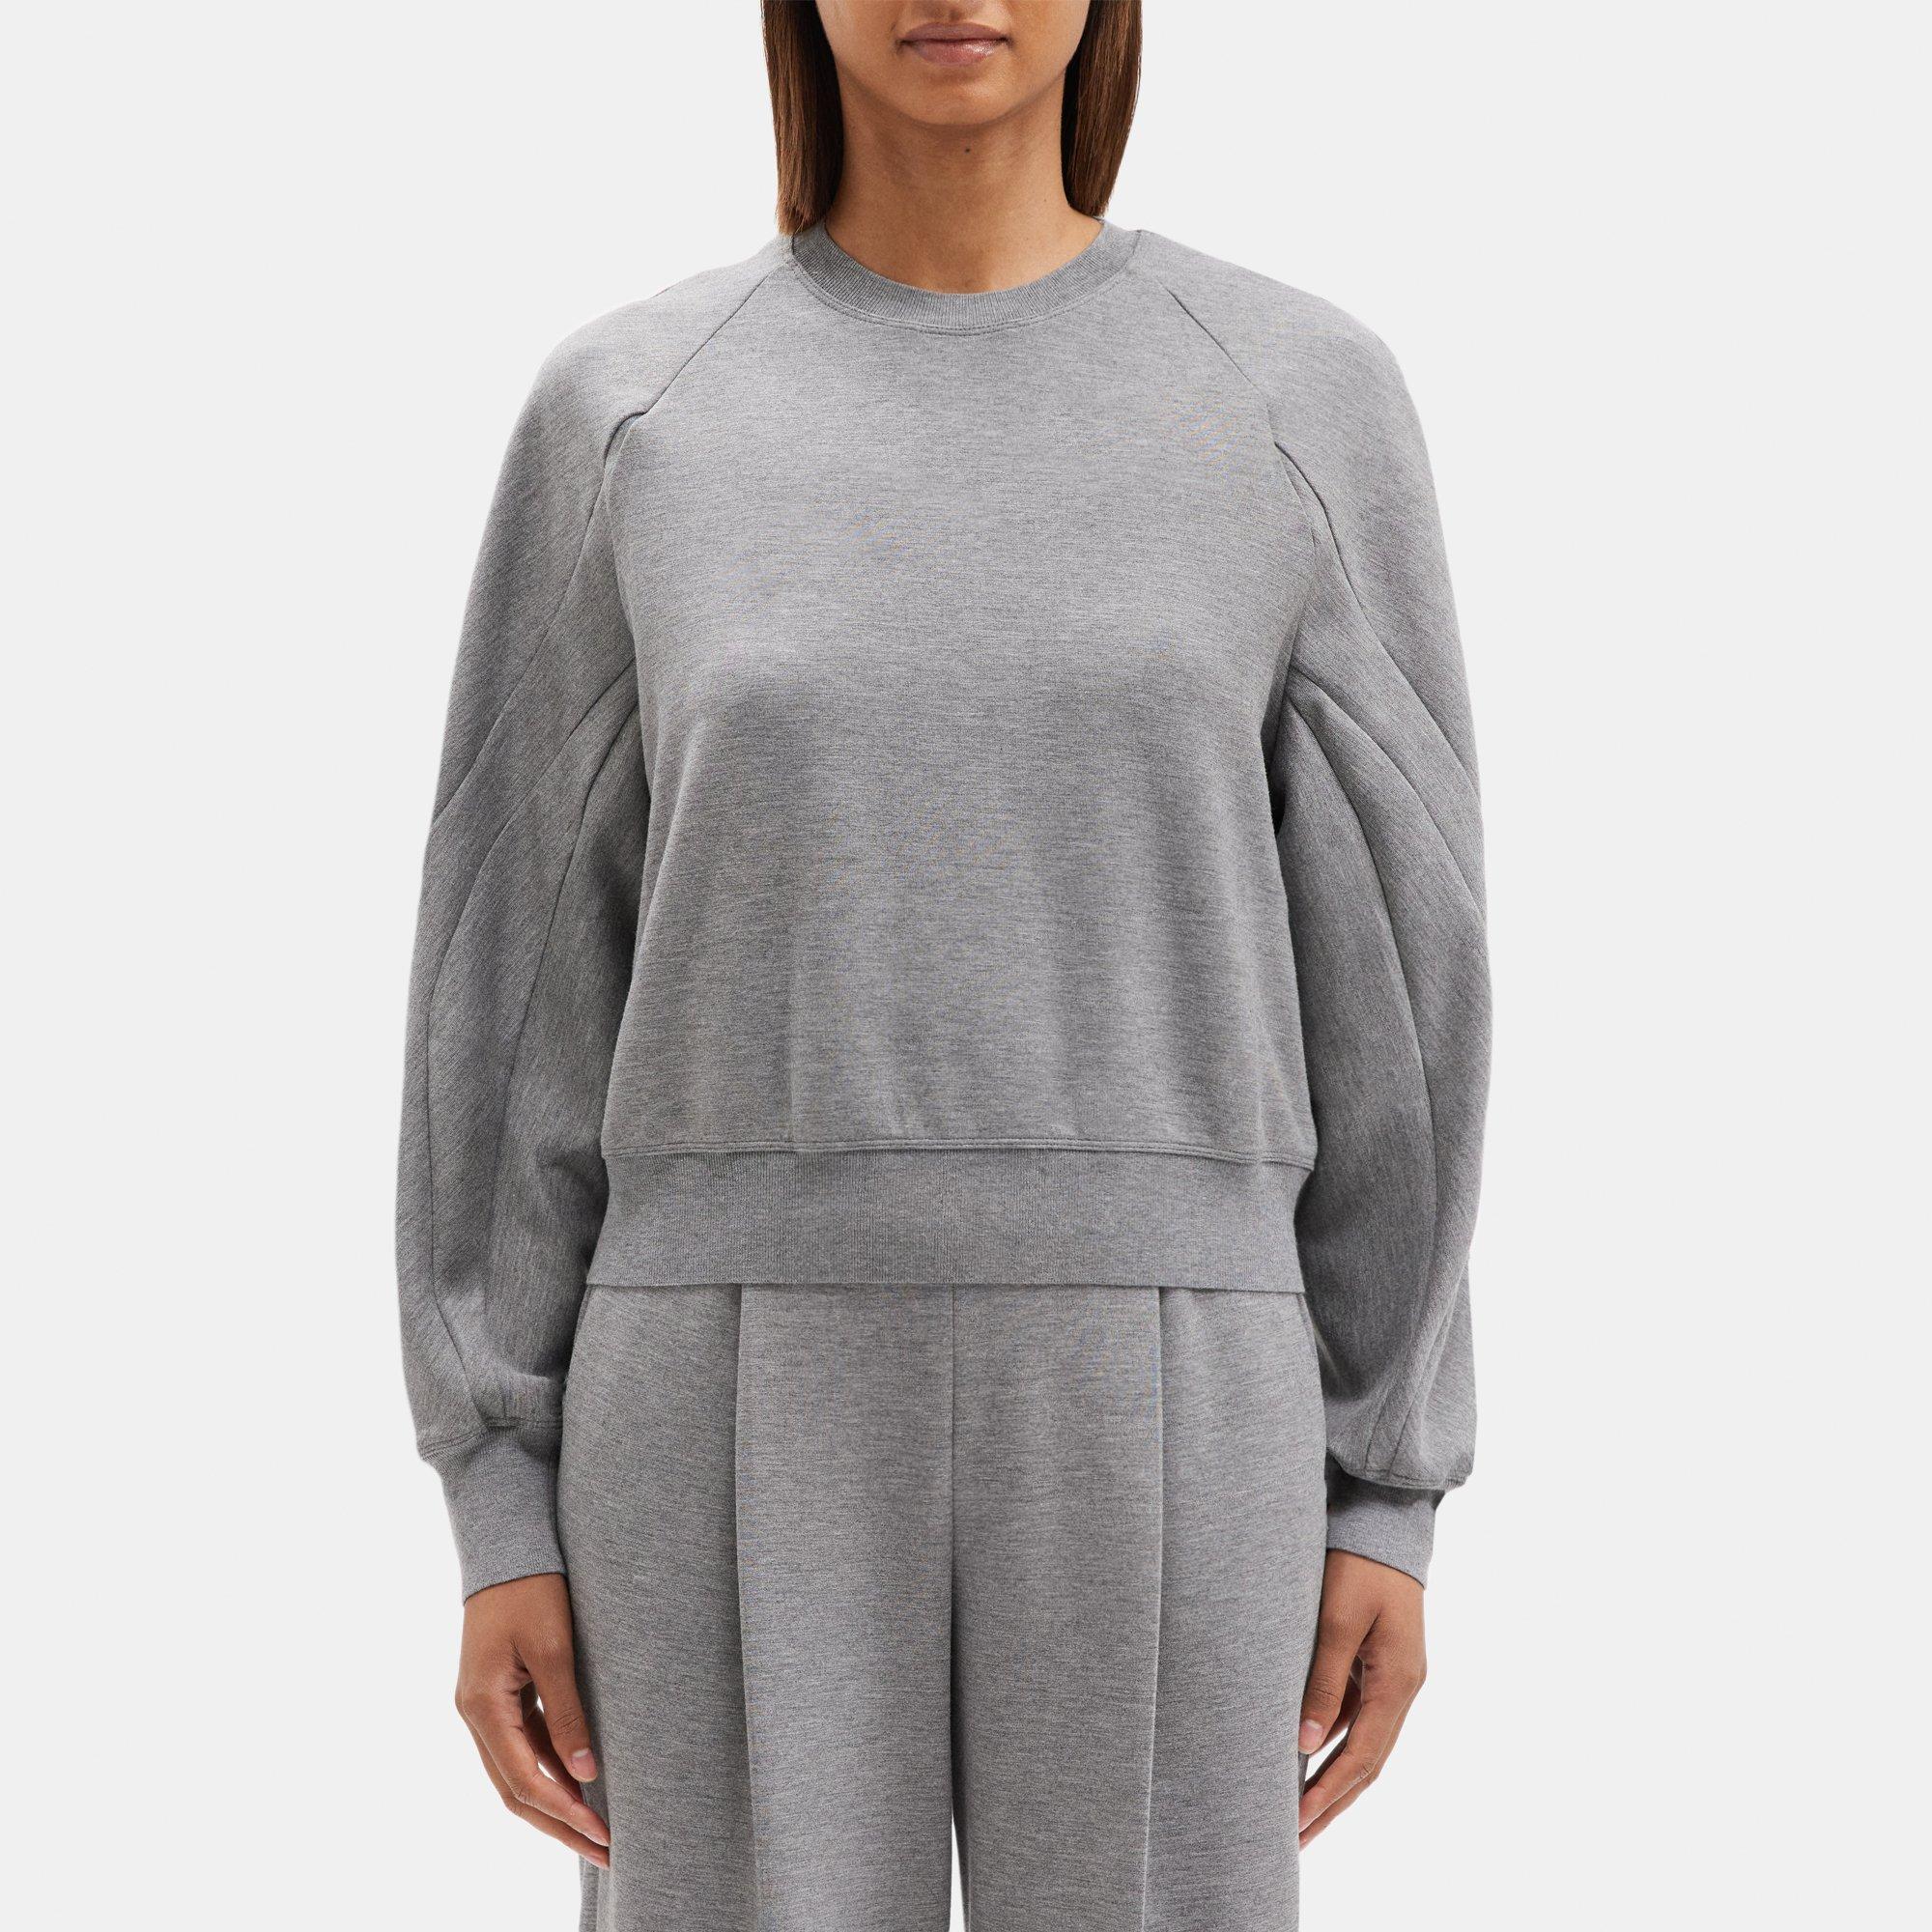 Raglan Sleeve Sweatshirt in Double-Knit Jersey